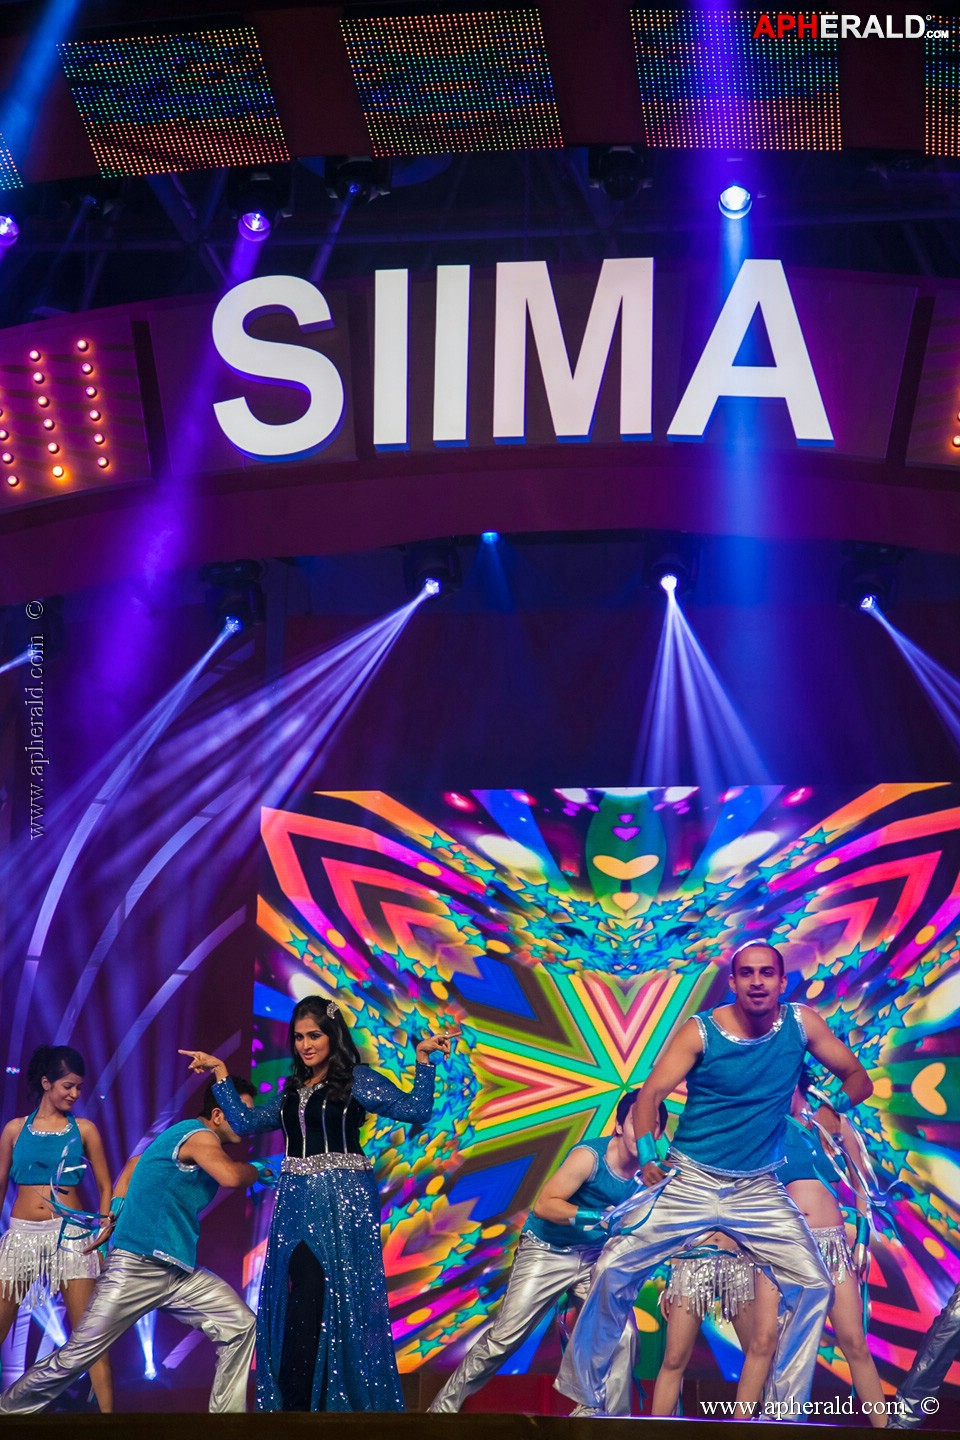 Stars at SIIMA 2013 Awards 5